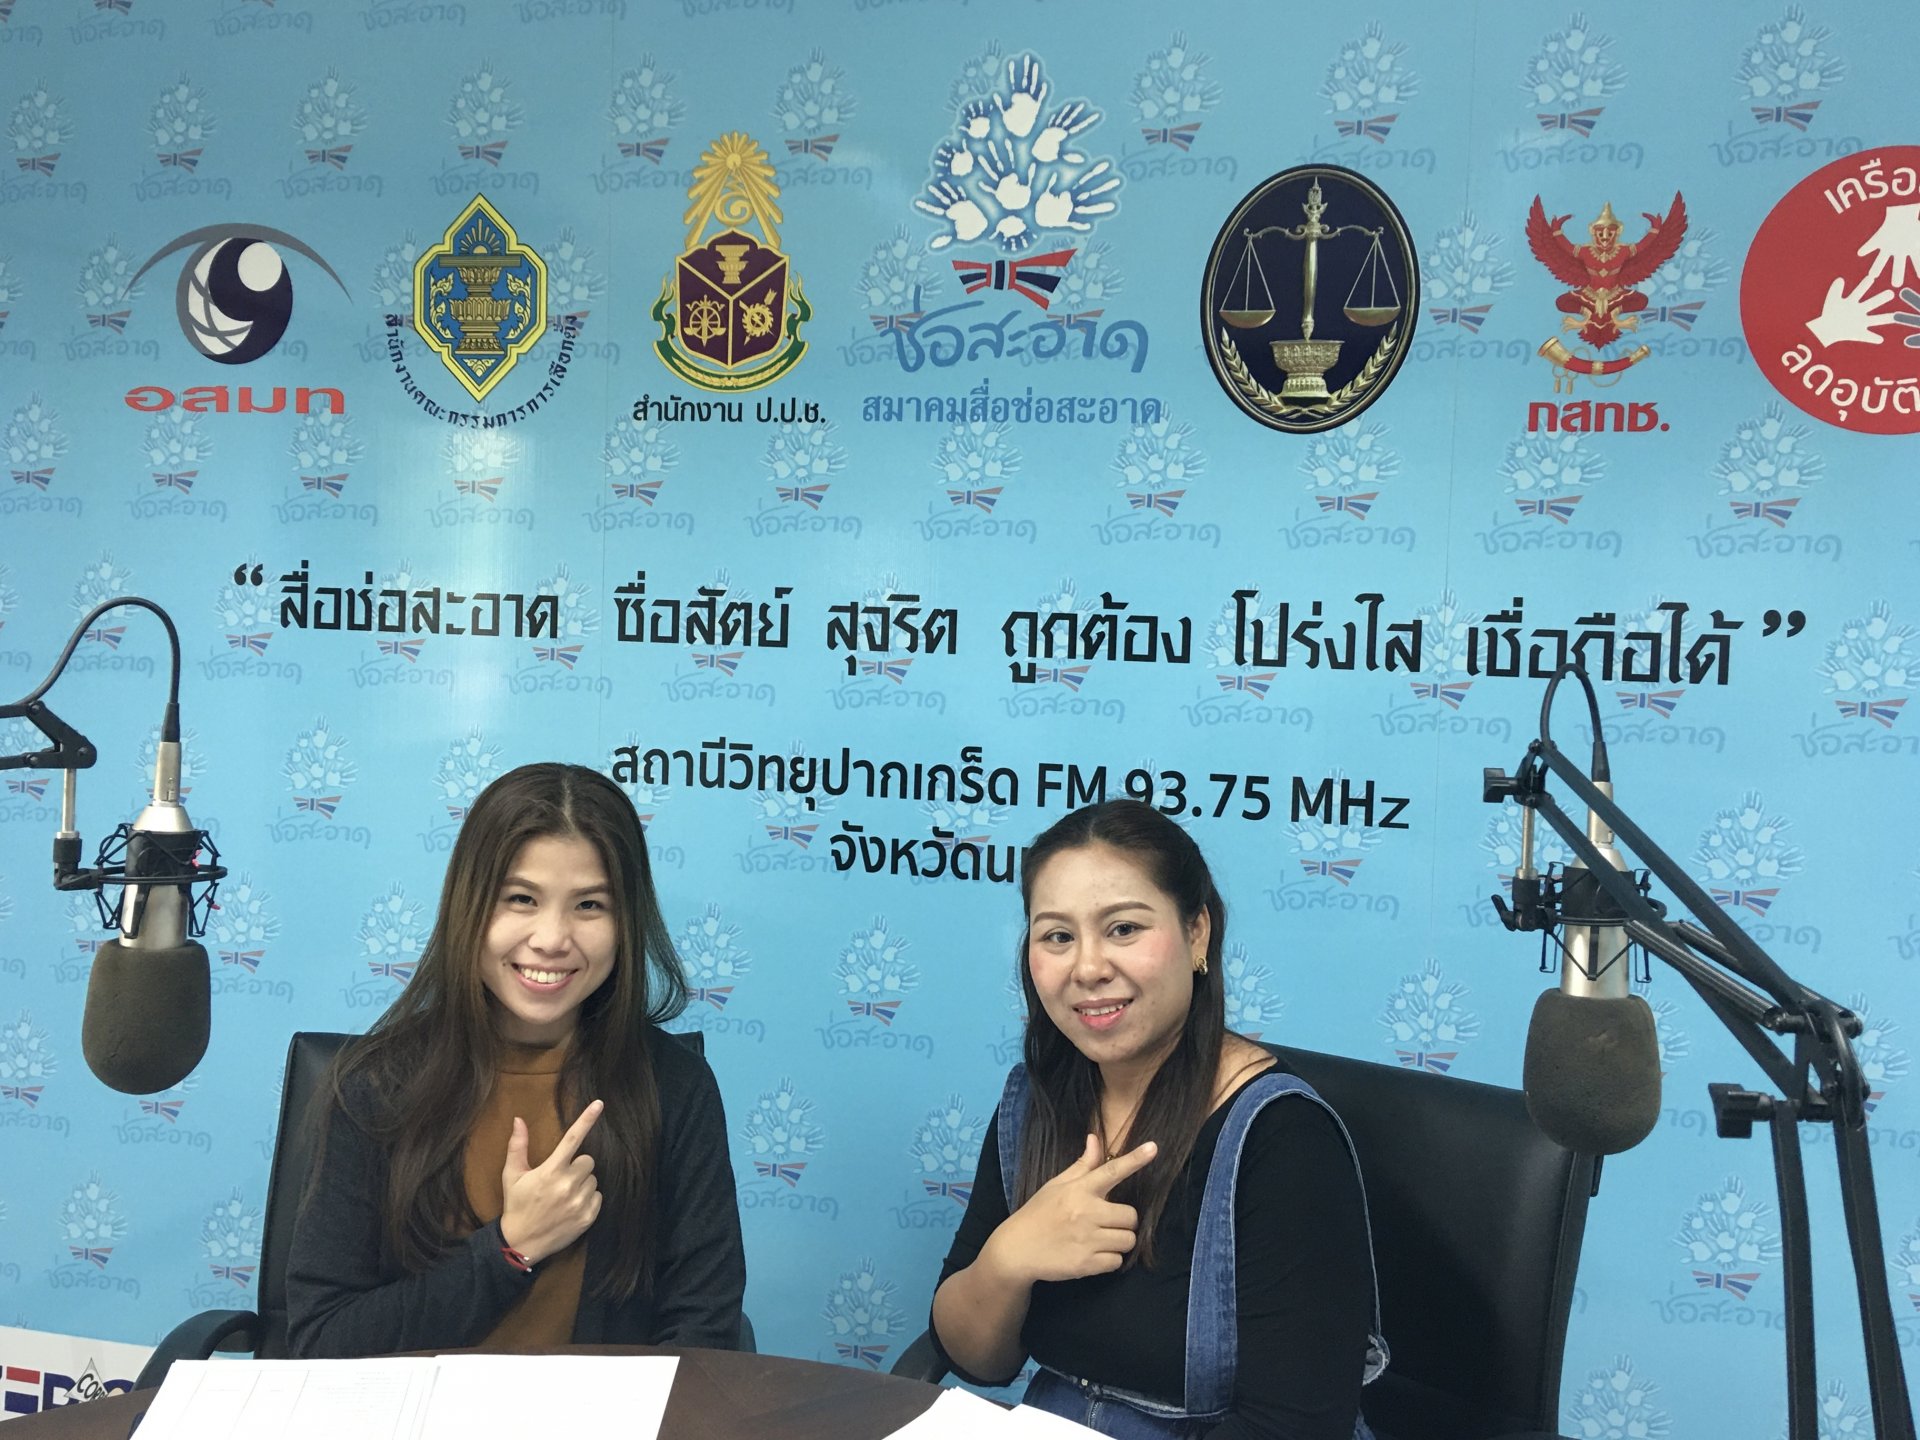 รายการ “คนไทยไม่ทนต่อการทุจริต” วันเสาร์ที่ 13 กุมภาพันธ์ 2564 เวลา 18.30-19.00 น.